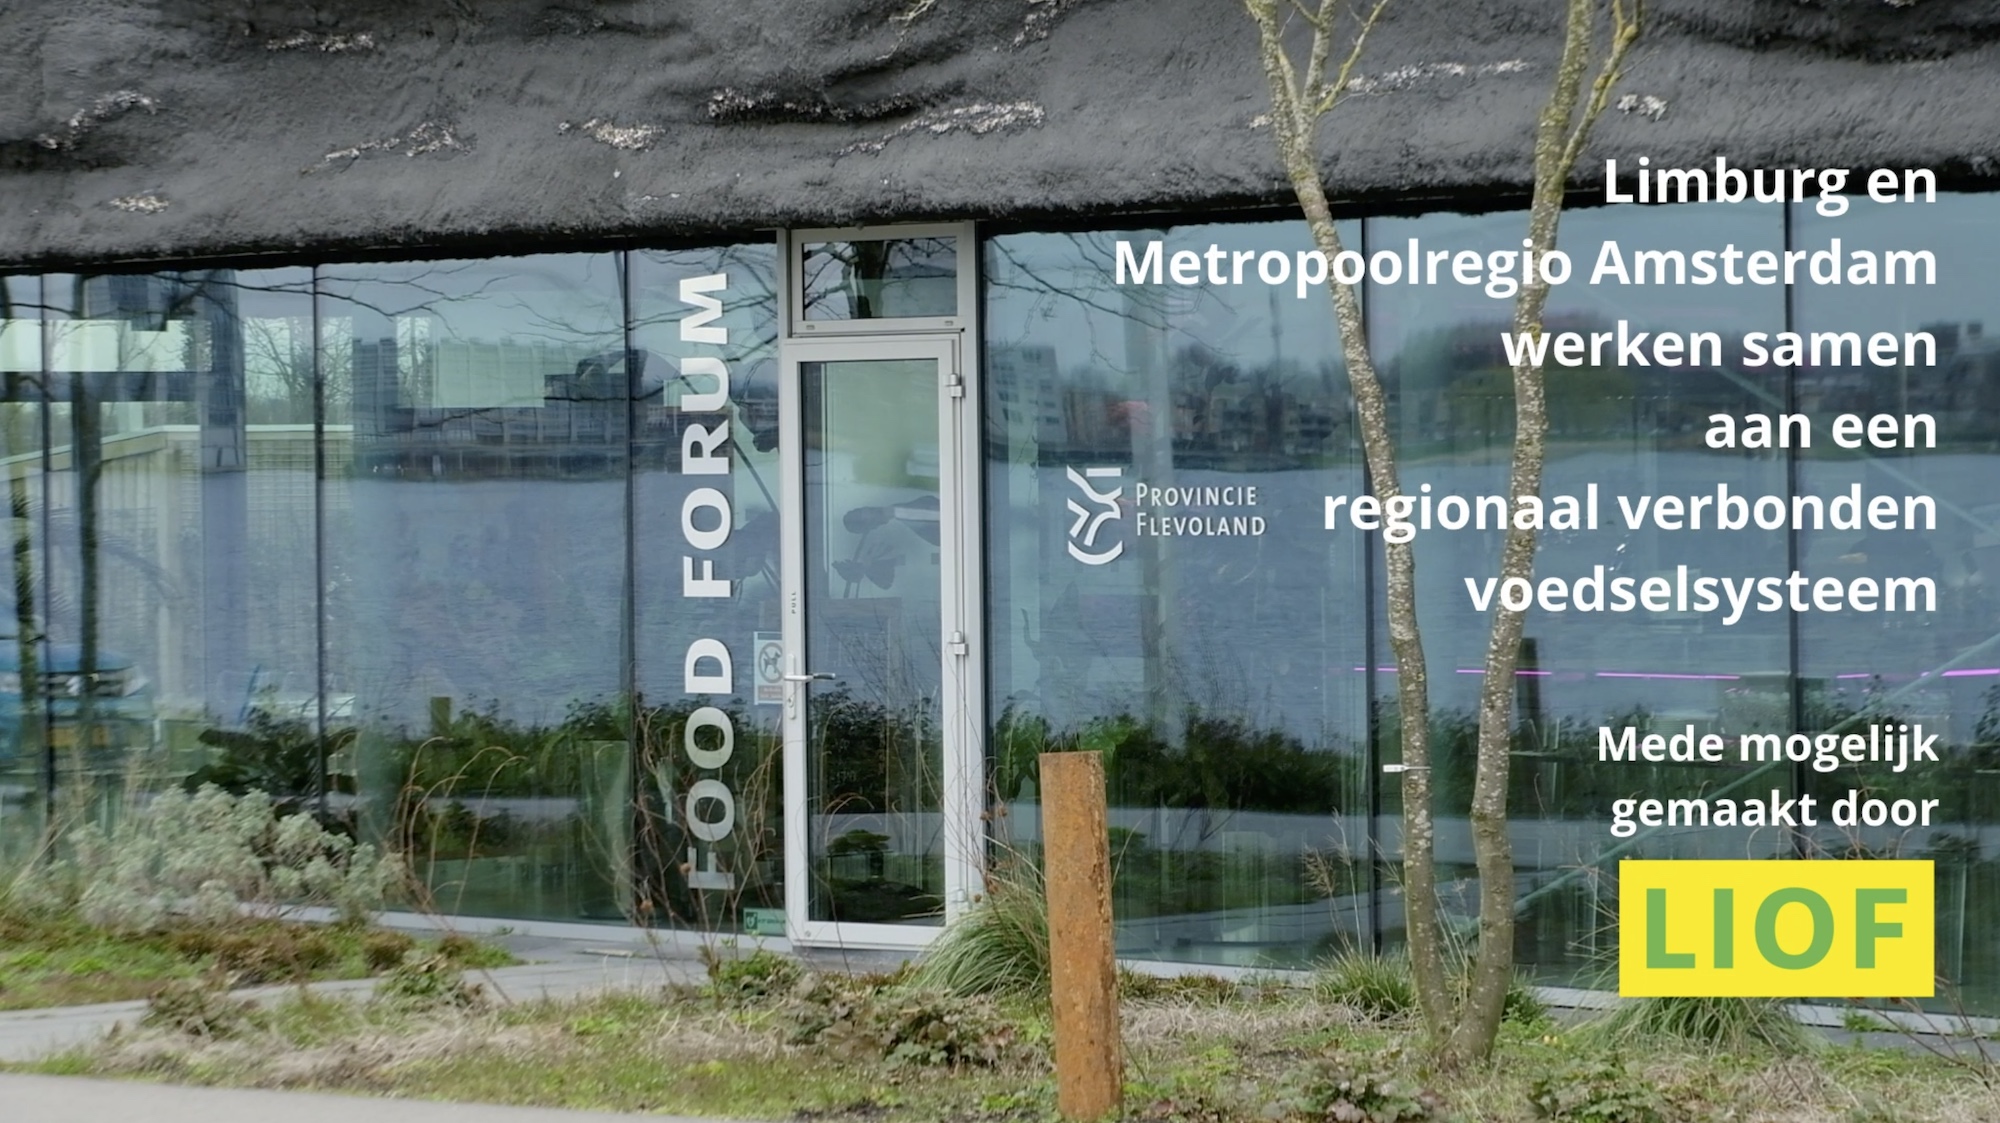 Limburg en Metropoolregio Amsterdam werken samen aan een regionaal verbonden voedselsysteem